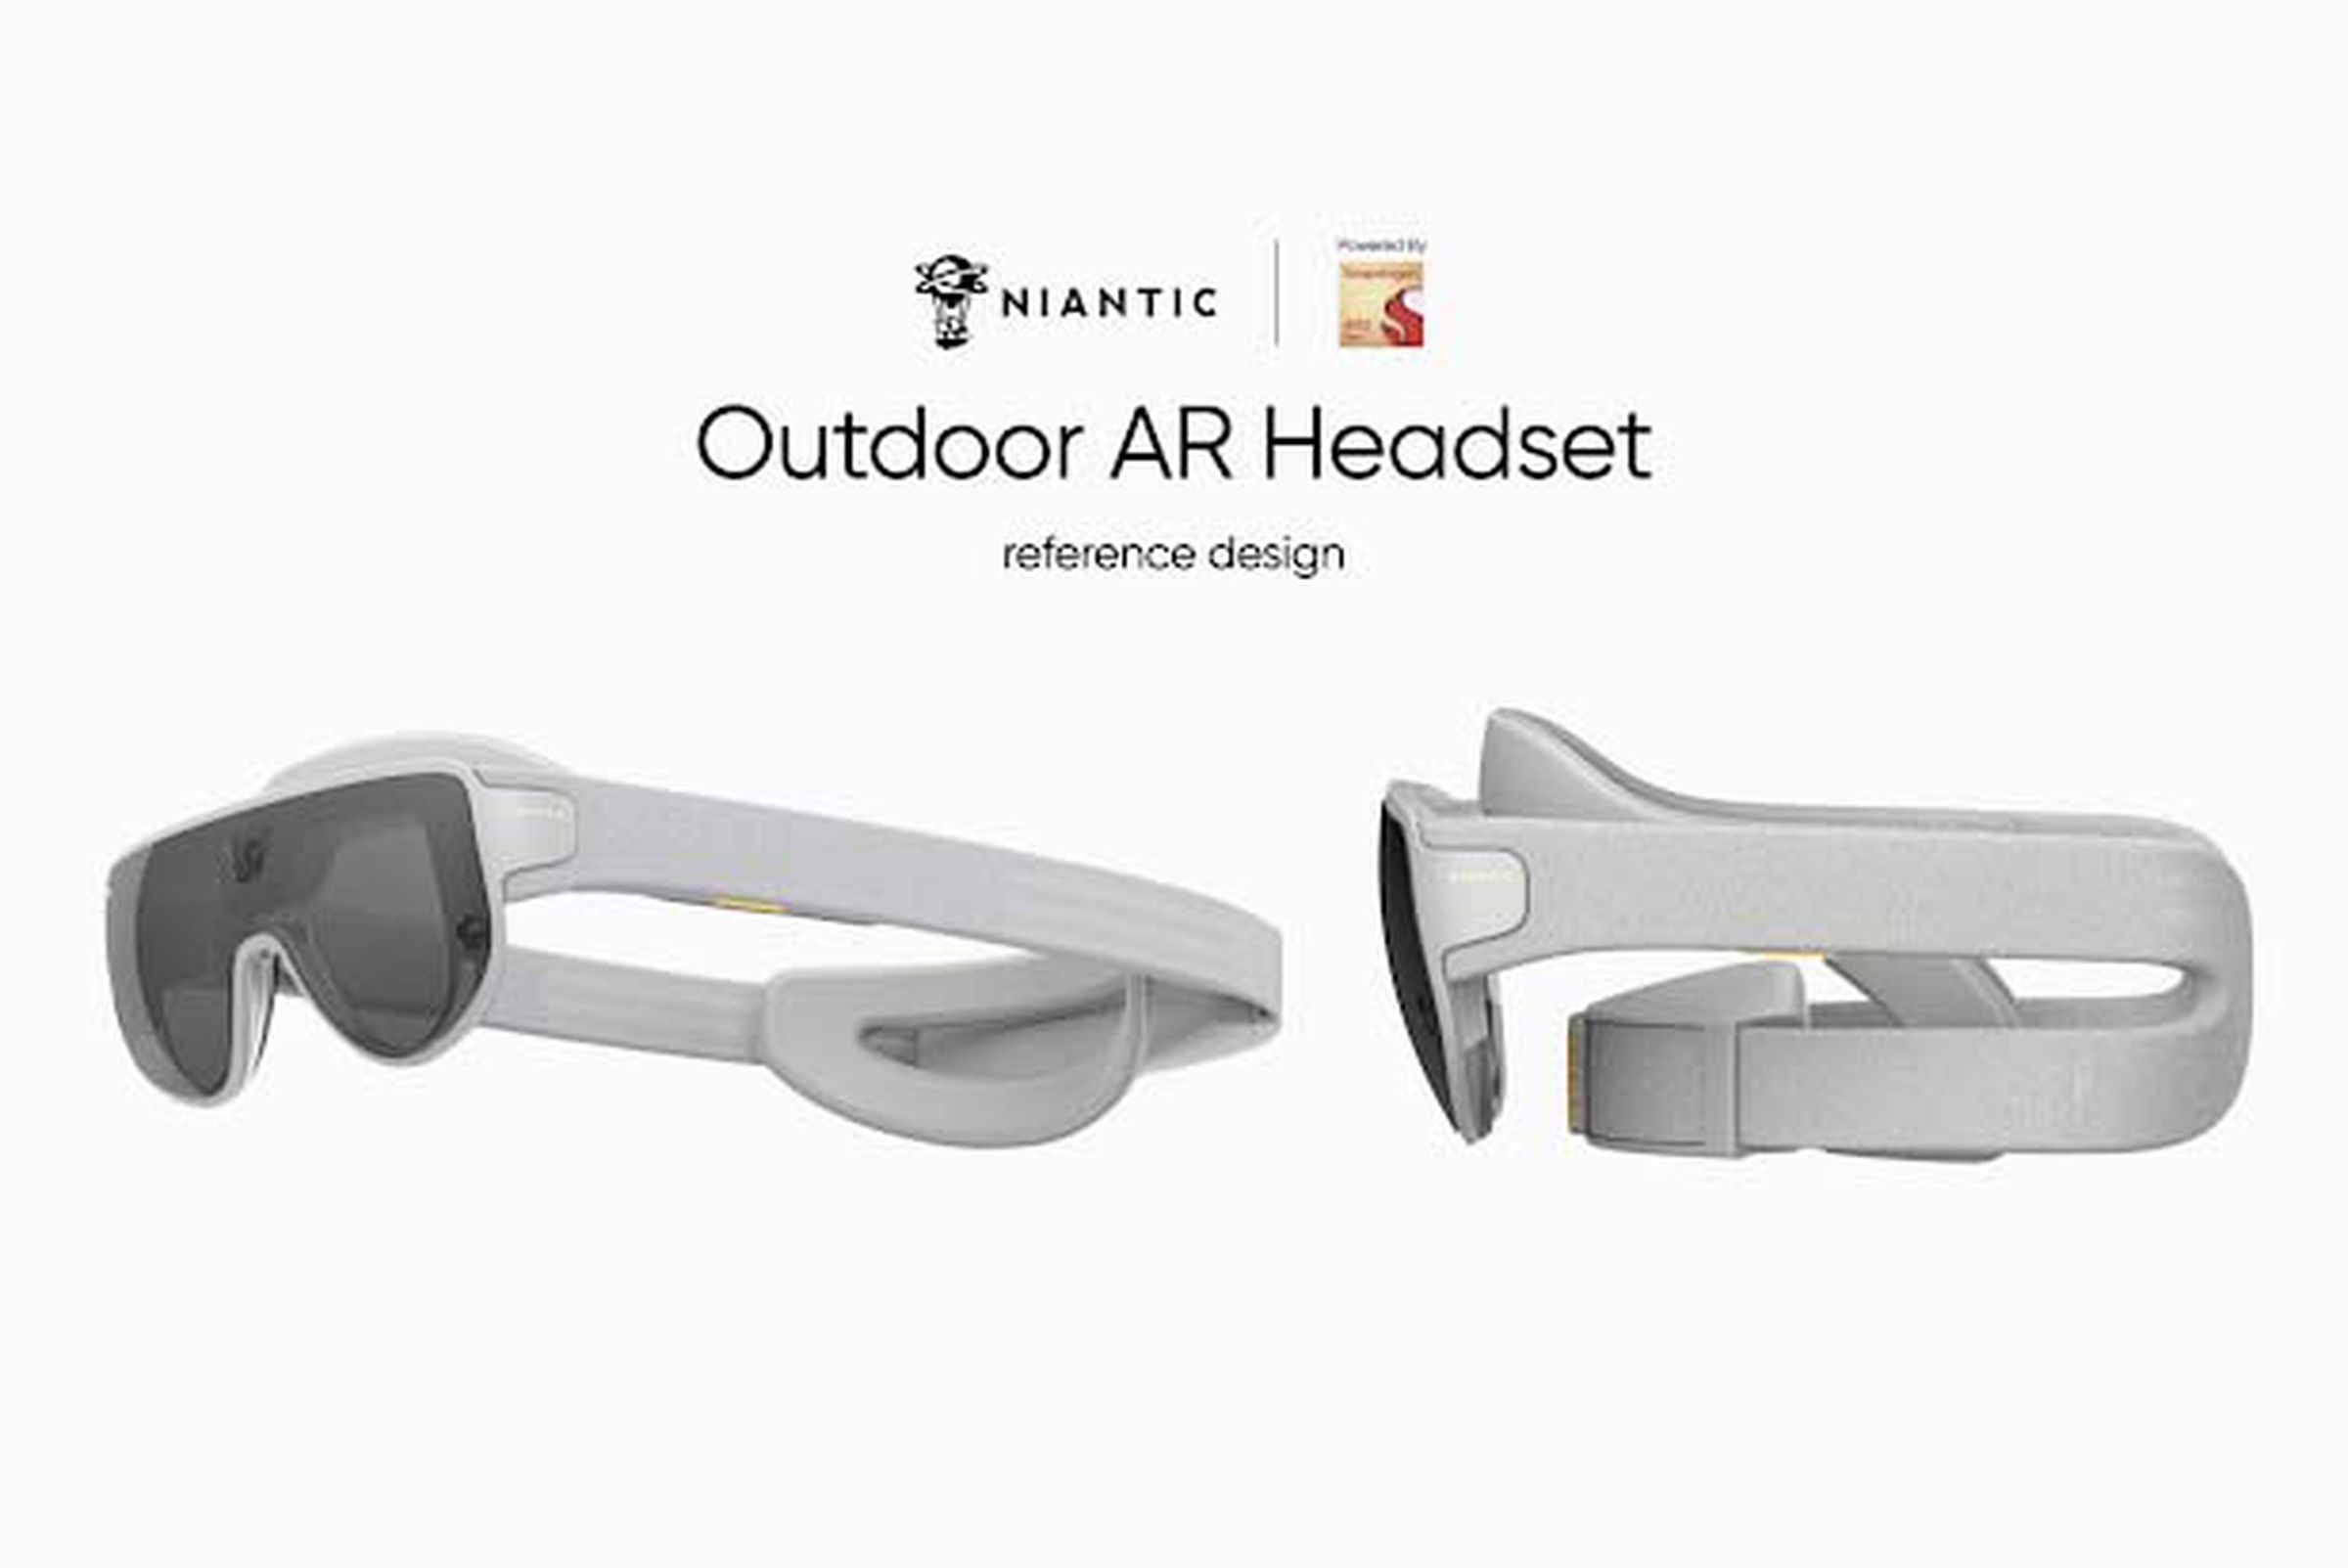 Niantic’s “Outdoor AR Headset.”